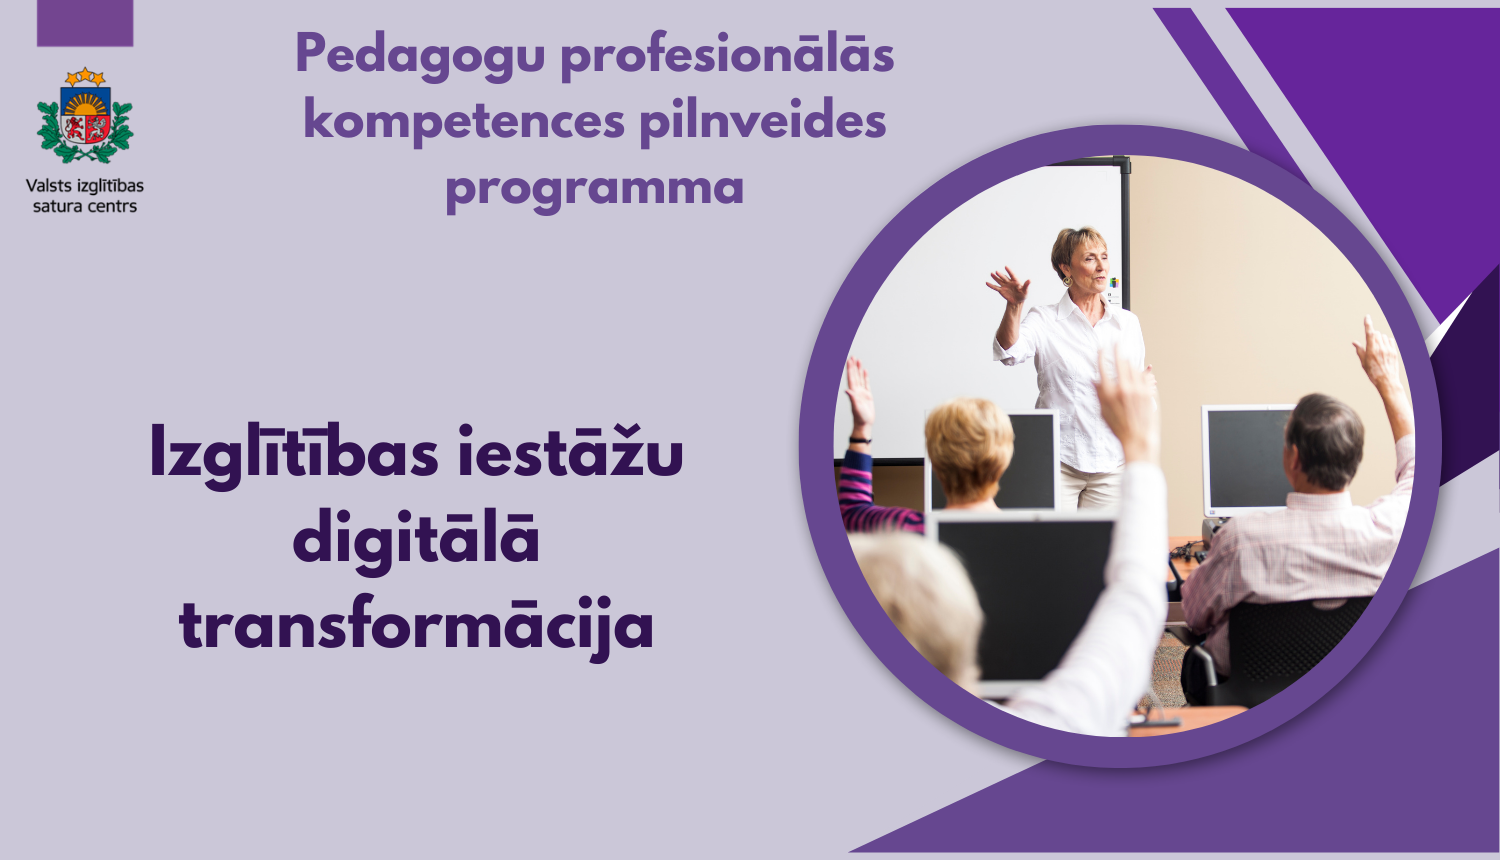 Pedagogu profesionālās kompetences pilnveides programma "Izglītības iestāžu digitālā transformācija"